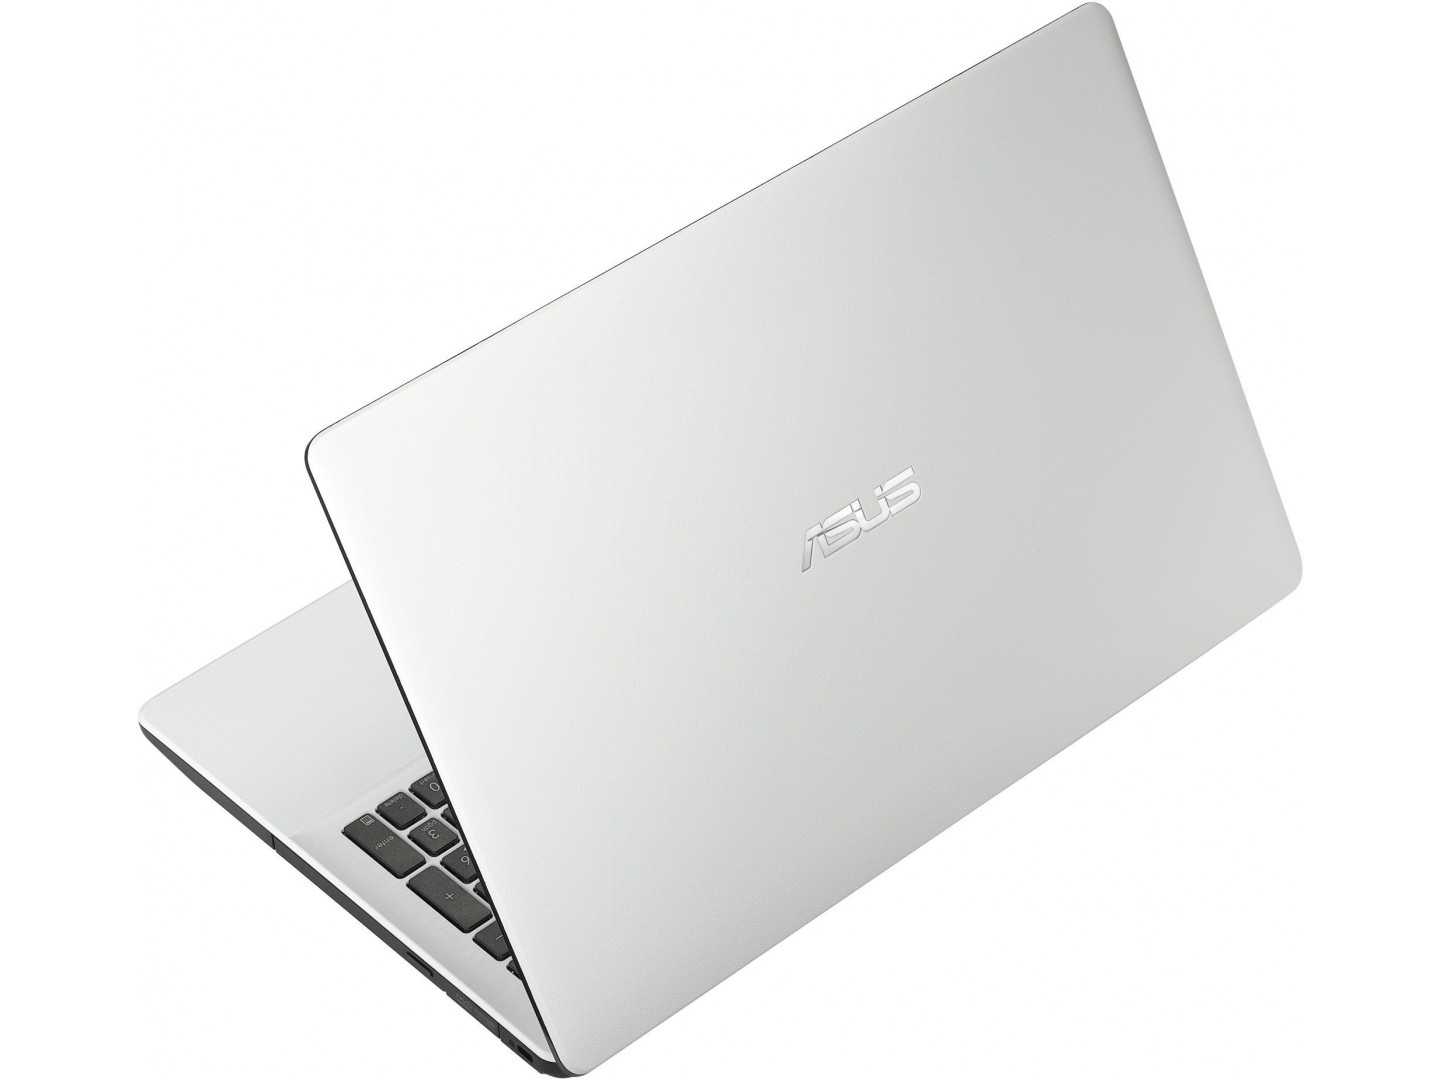 Ноутбук asus x552mj-sx011h — купить, цена и характеристики, отзывы